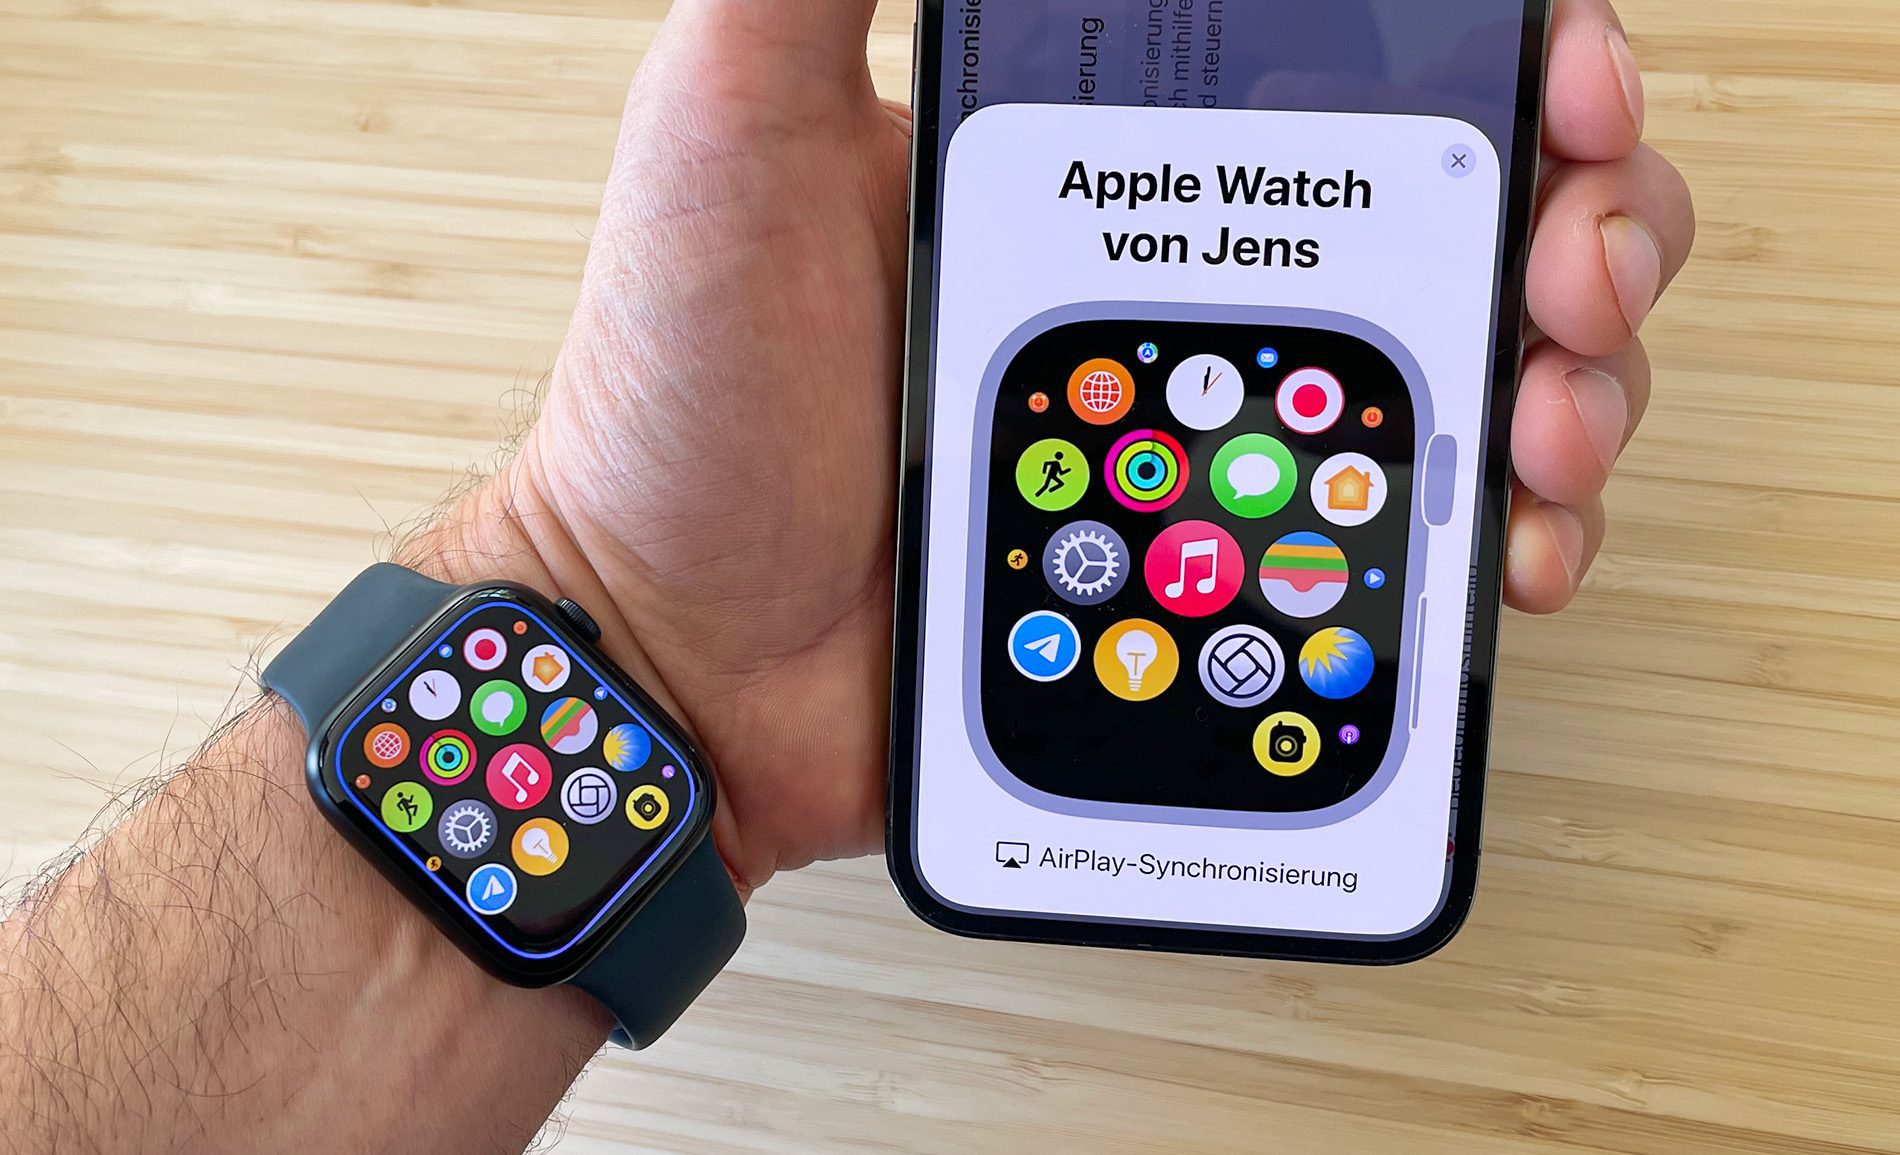 Todas las funciones del Apple Watch se pueden operar de forma remota a través de la imagen de Apple Watch en el iPhone.